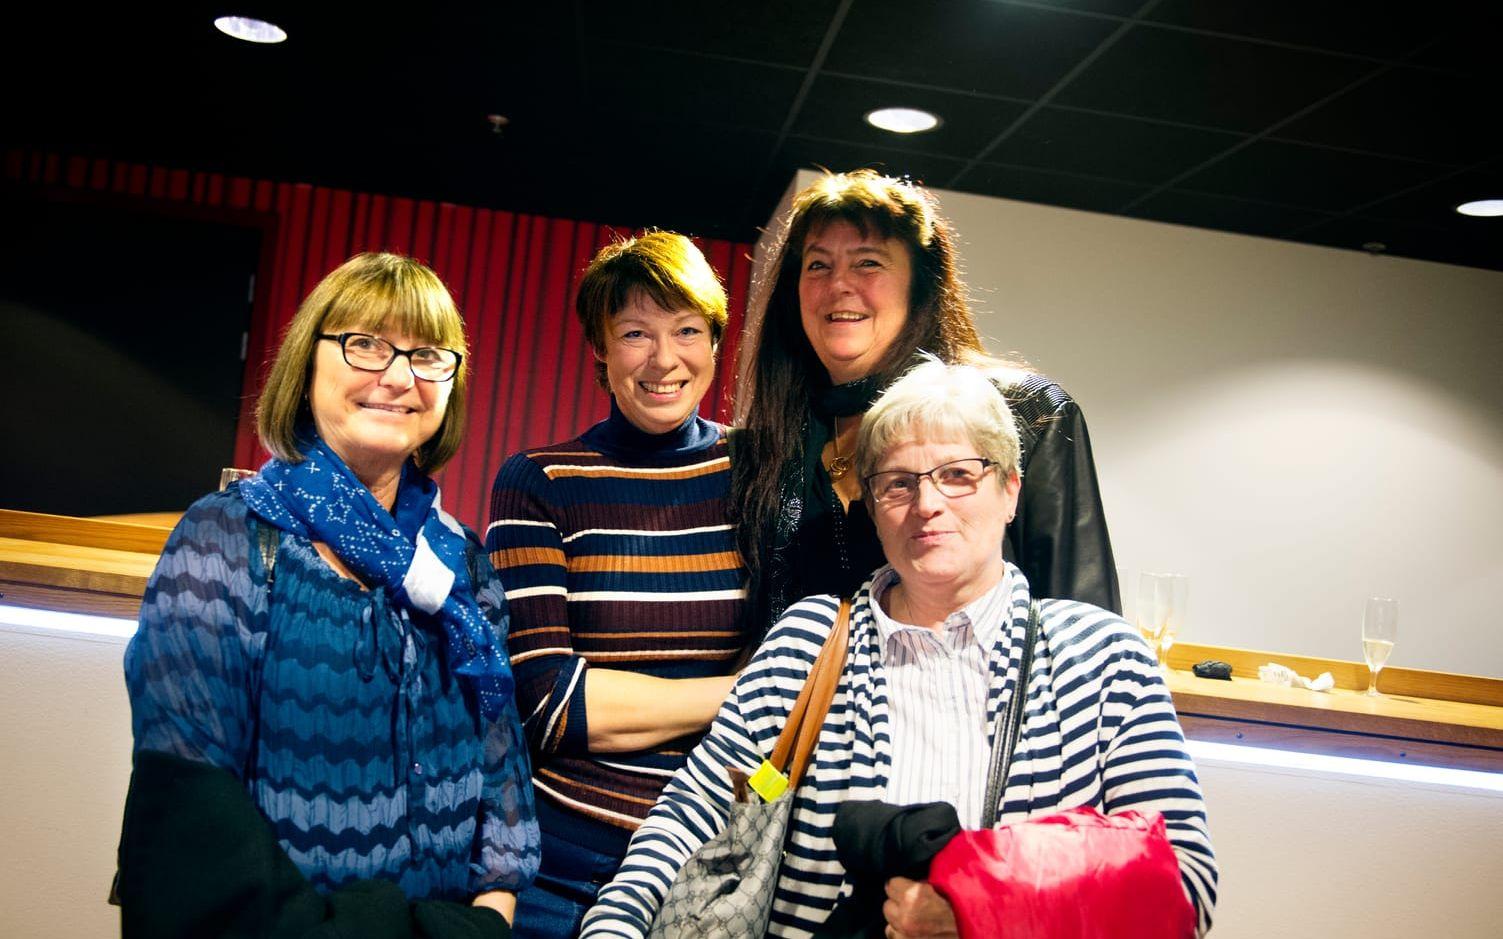 Margita Peterson, Annika Frick, Kristina Gellingskog och Inga-Lill Olsson kom i grupp och hoppades på en inspirerande föreställning med mycket systerskap. Foto: Anna Svanberg.